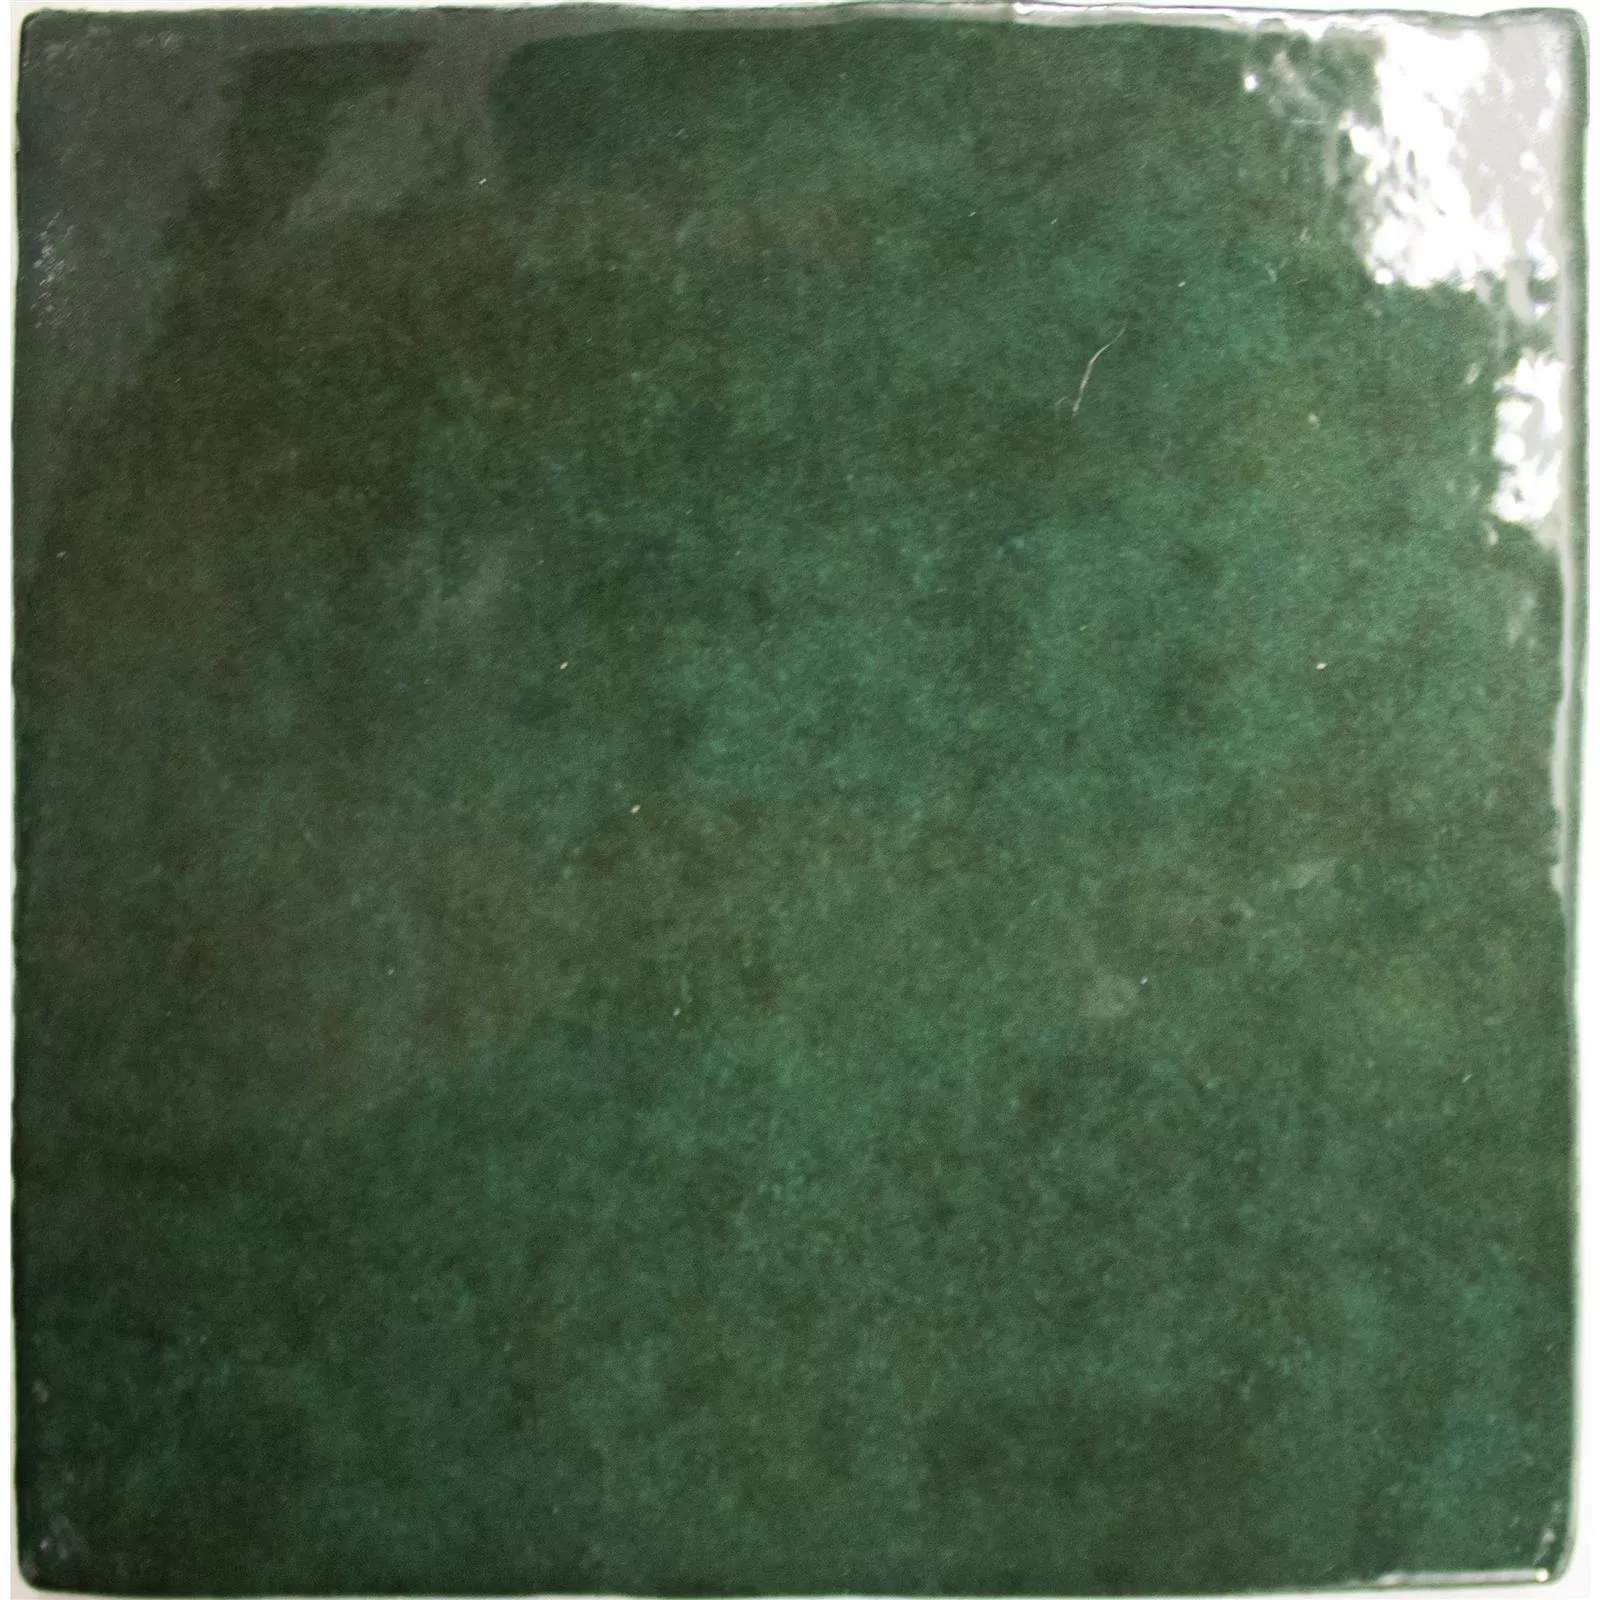 Campione Rivestimenti Concord Ottica Ondulata Verde 13,2x13,2cm